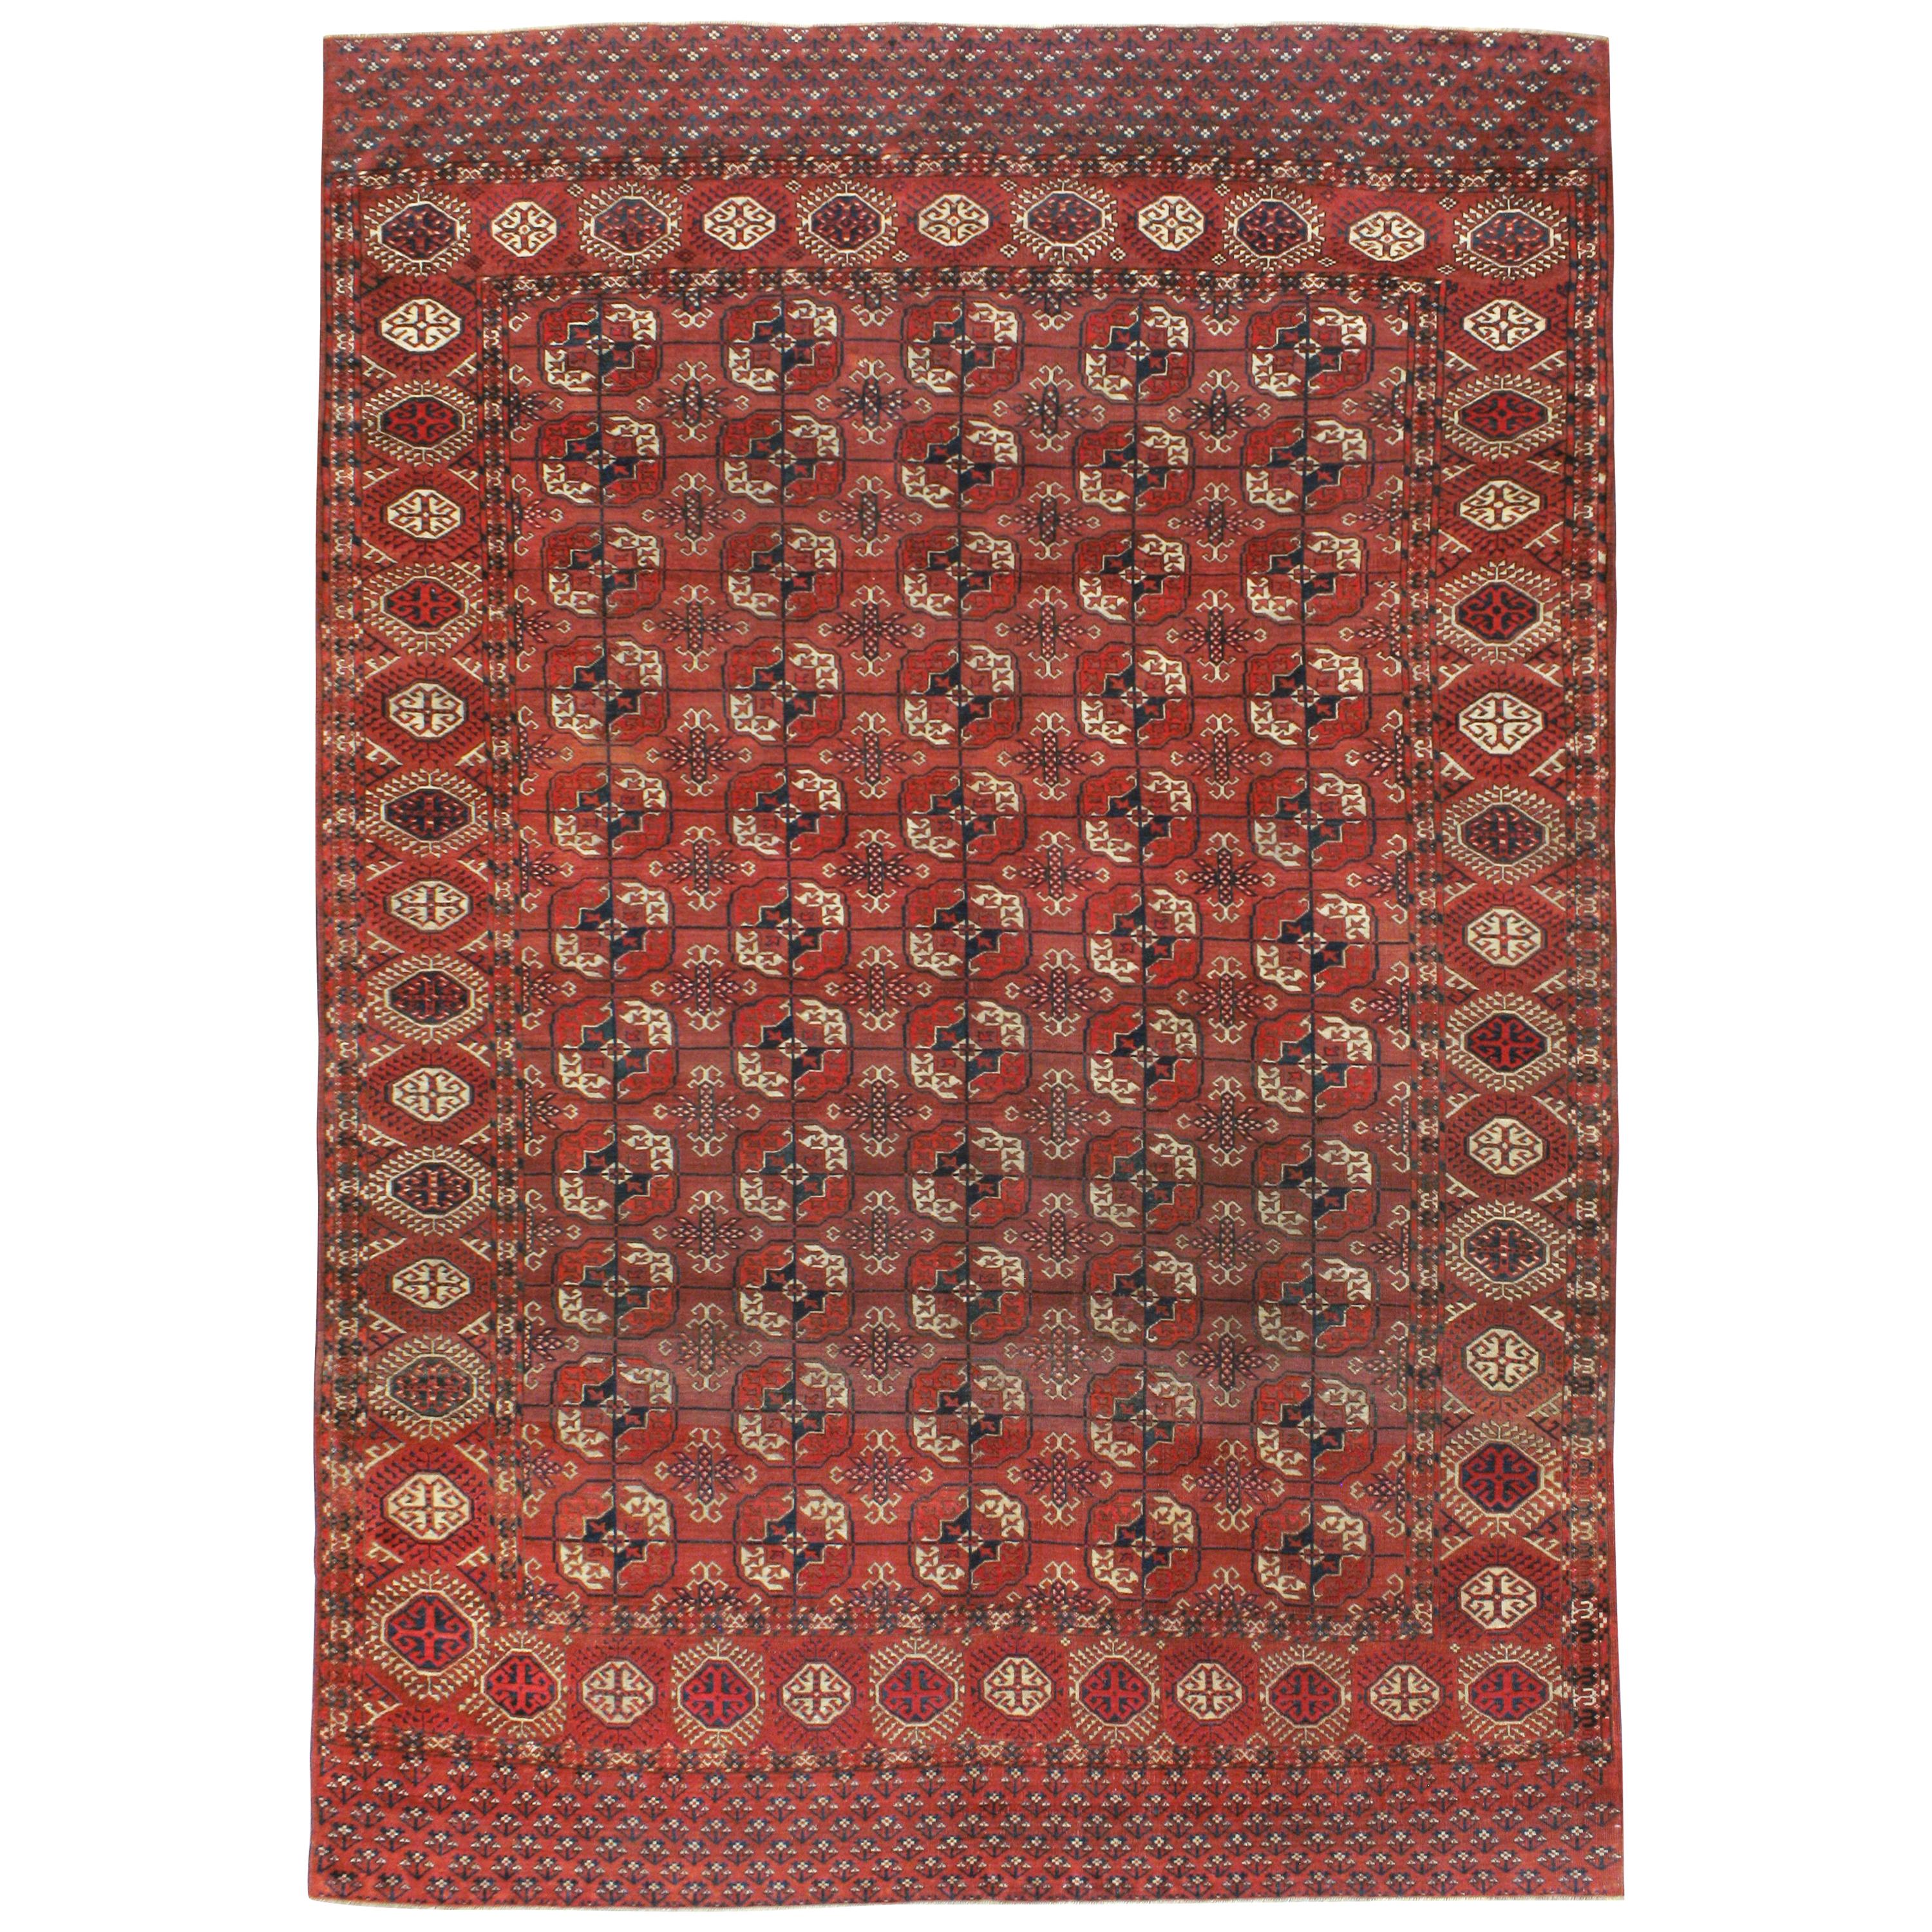 Antique Central Asian Tekke Carpet For Sale